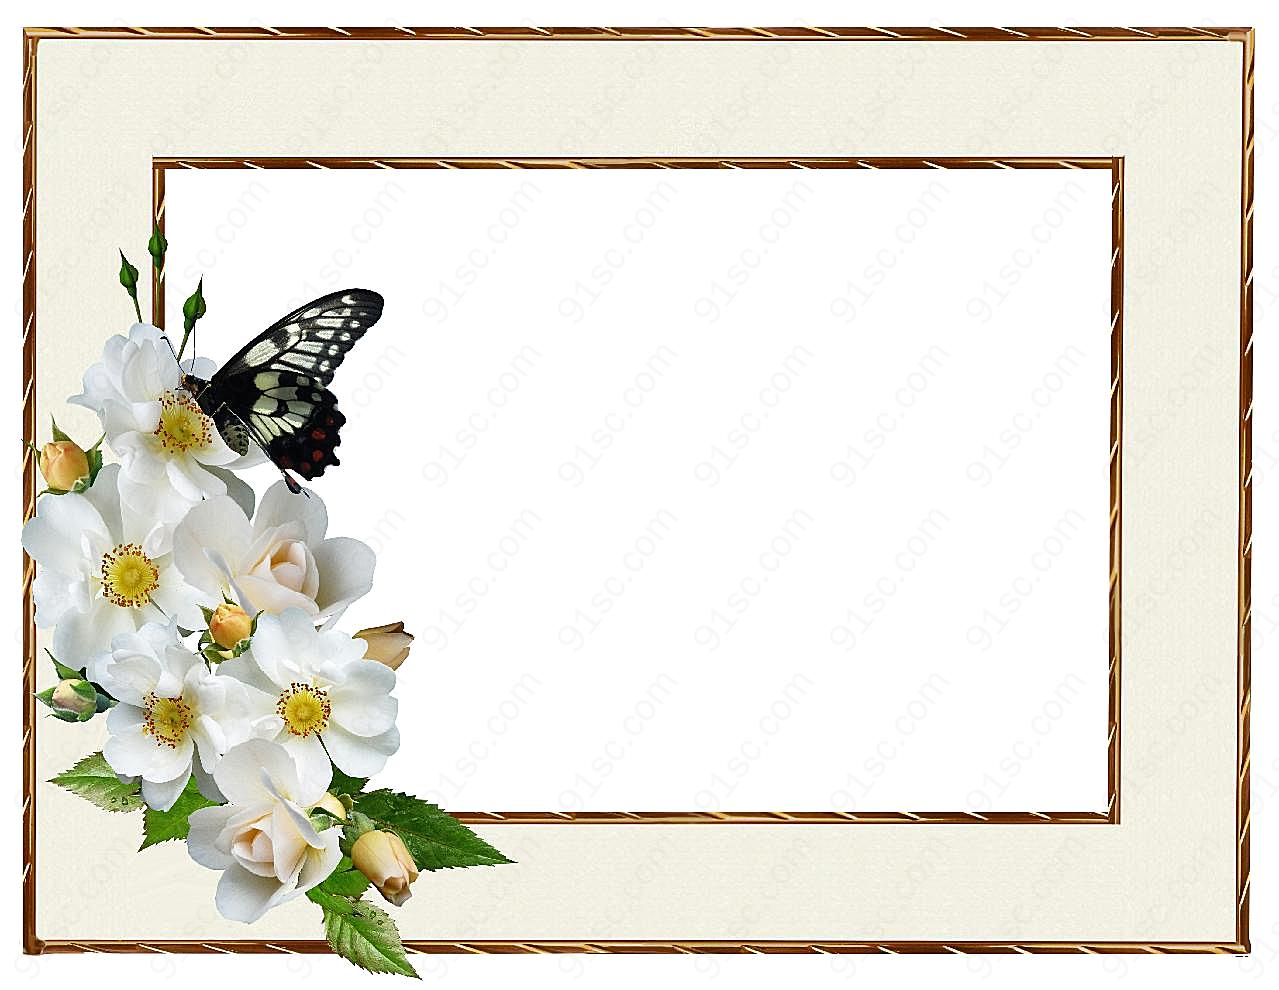 蝴蝶鲜花金属相框图片高清摄影